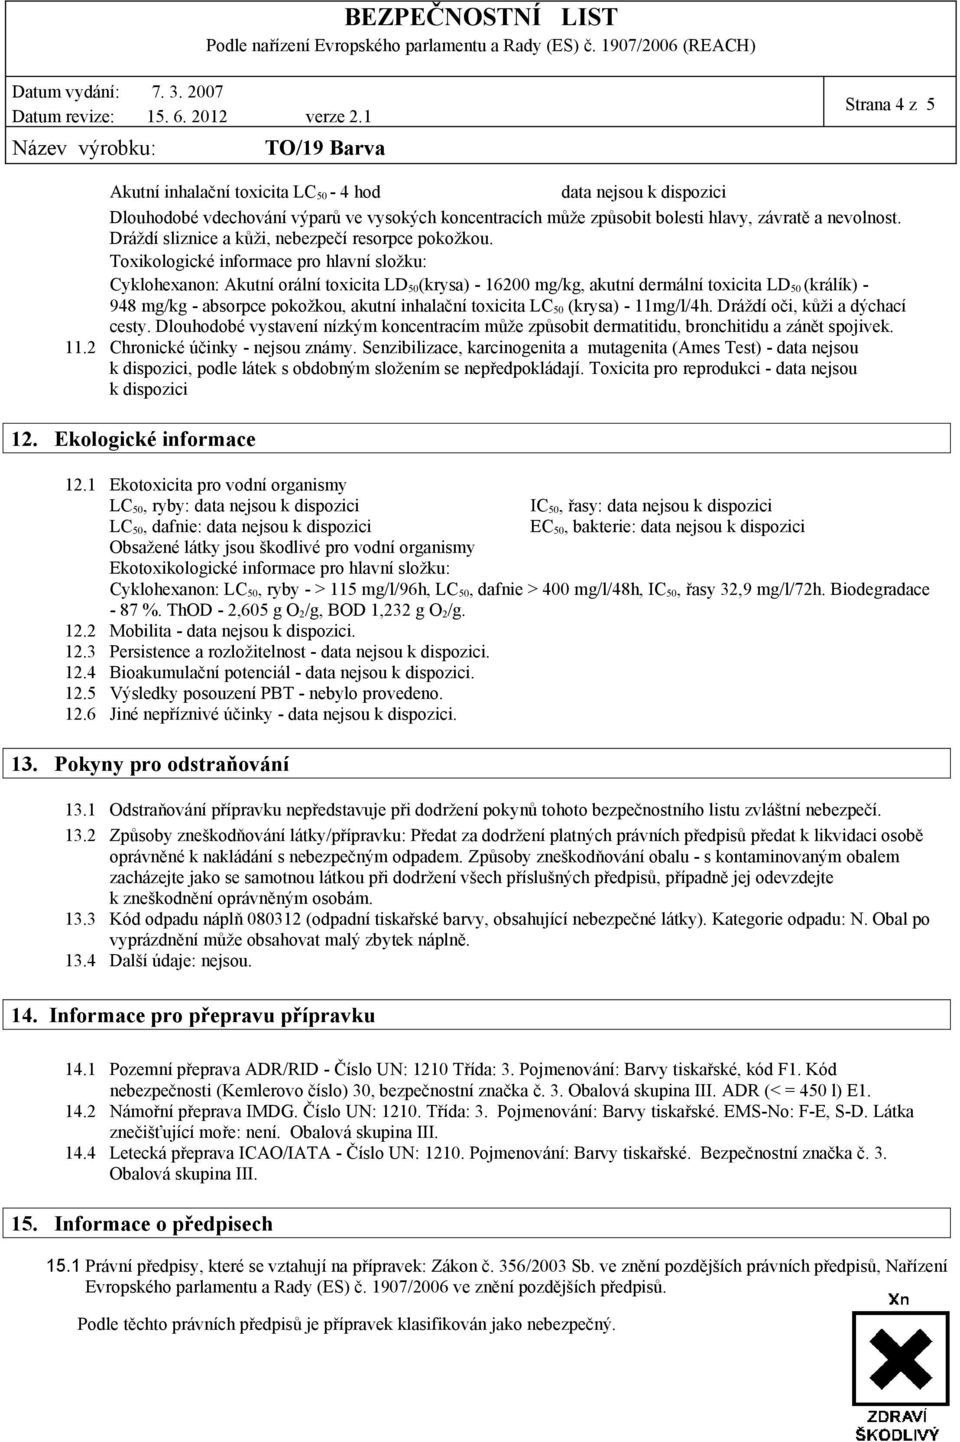 Toxikologické informace pro hlavní složku: Cyklohexanon: Akutní orální toxicita LD 50 (krysa) - 16200 mg/kg, akutní dermální toxicita LD 50 (králík) - 948 mg/kg - absorpce pokožkou, akutní inhalační